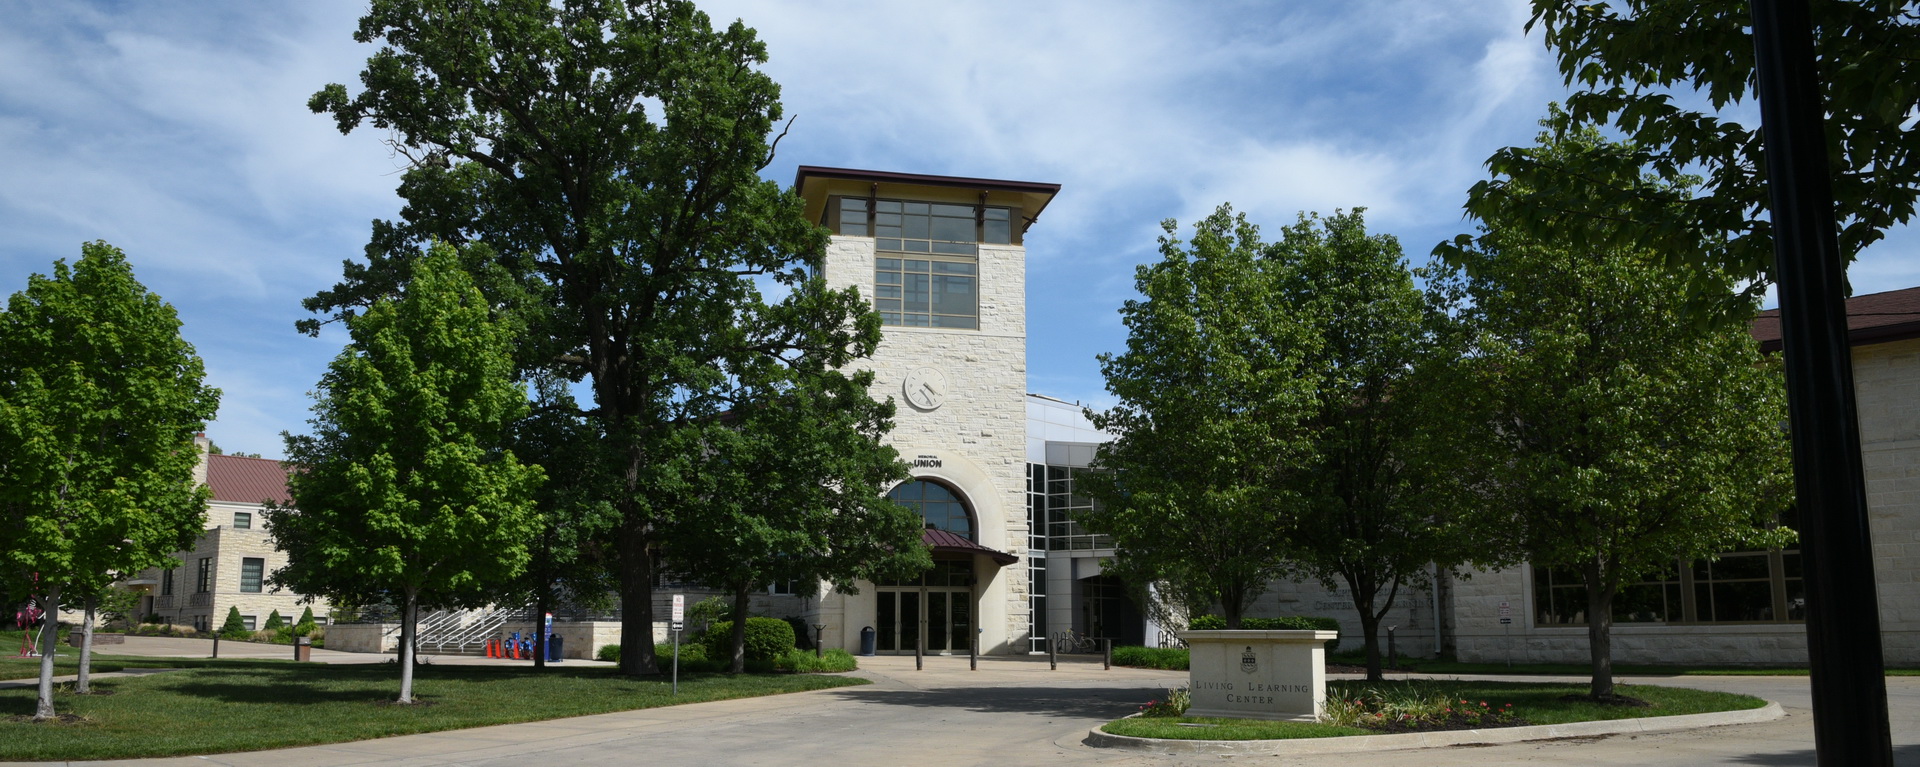 Memorial Union west entrance